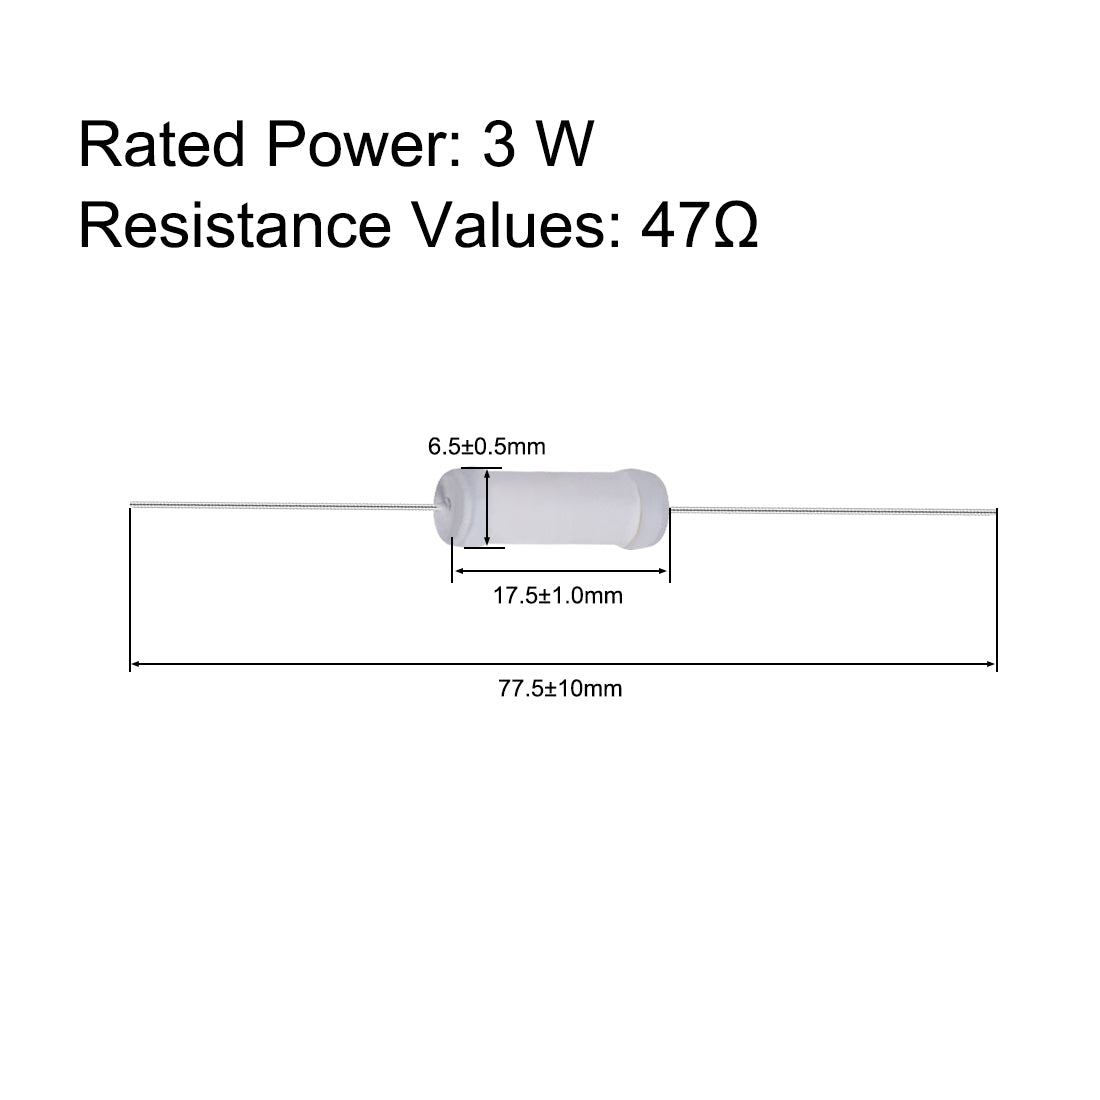 uxcell Uxcell 20pcs 3W 3 Watt Metal Oxide Film Resistor Lead 47 Ohm ±5% Tolerance